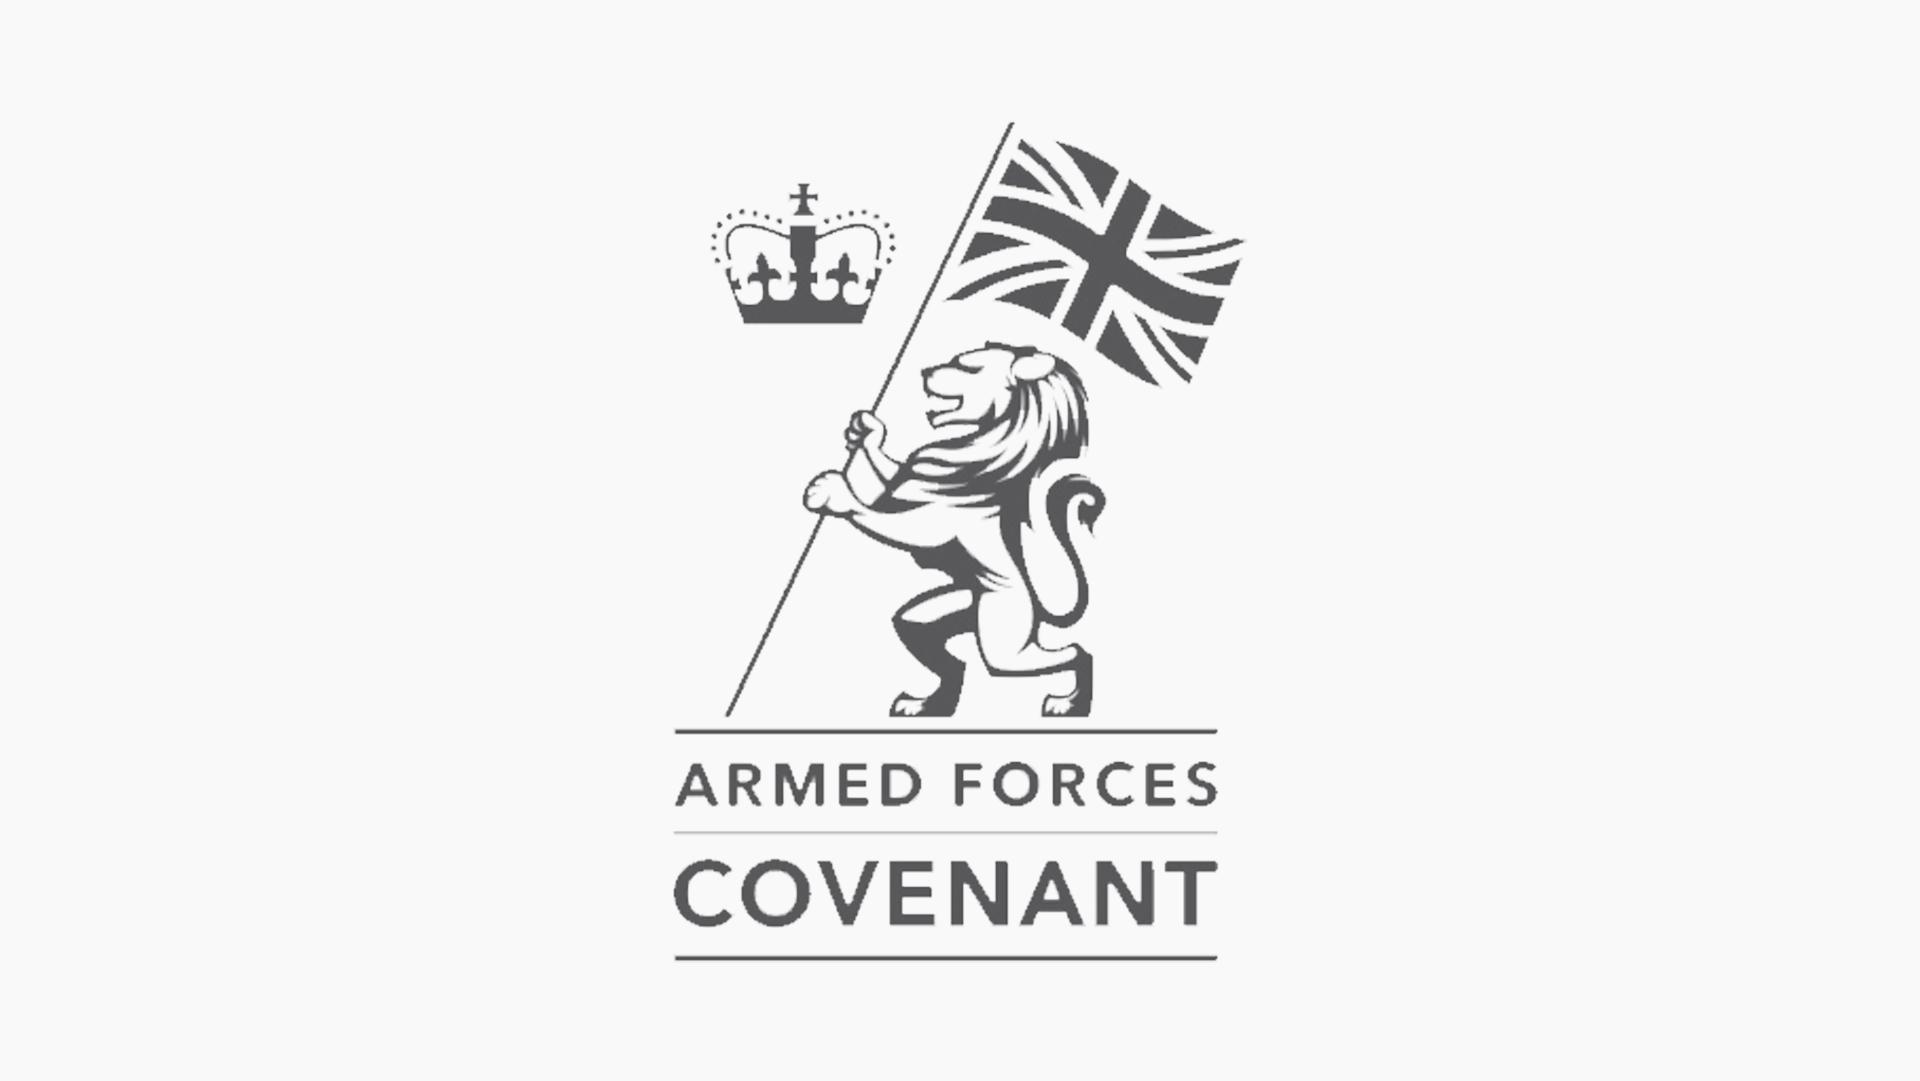 Armed forces covenant V2